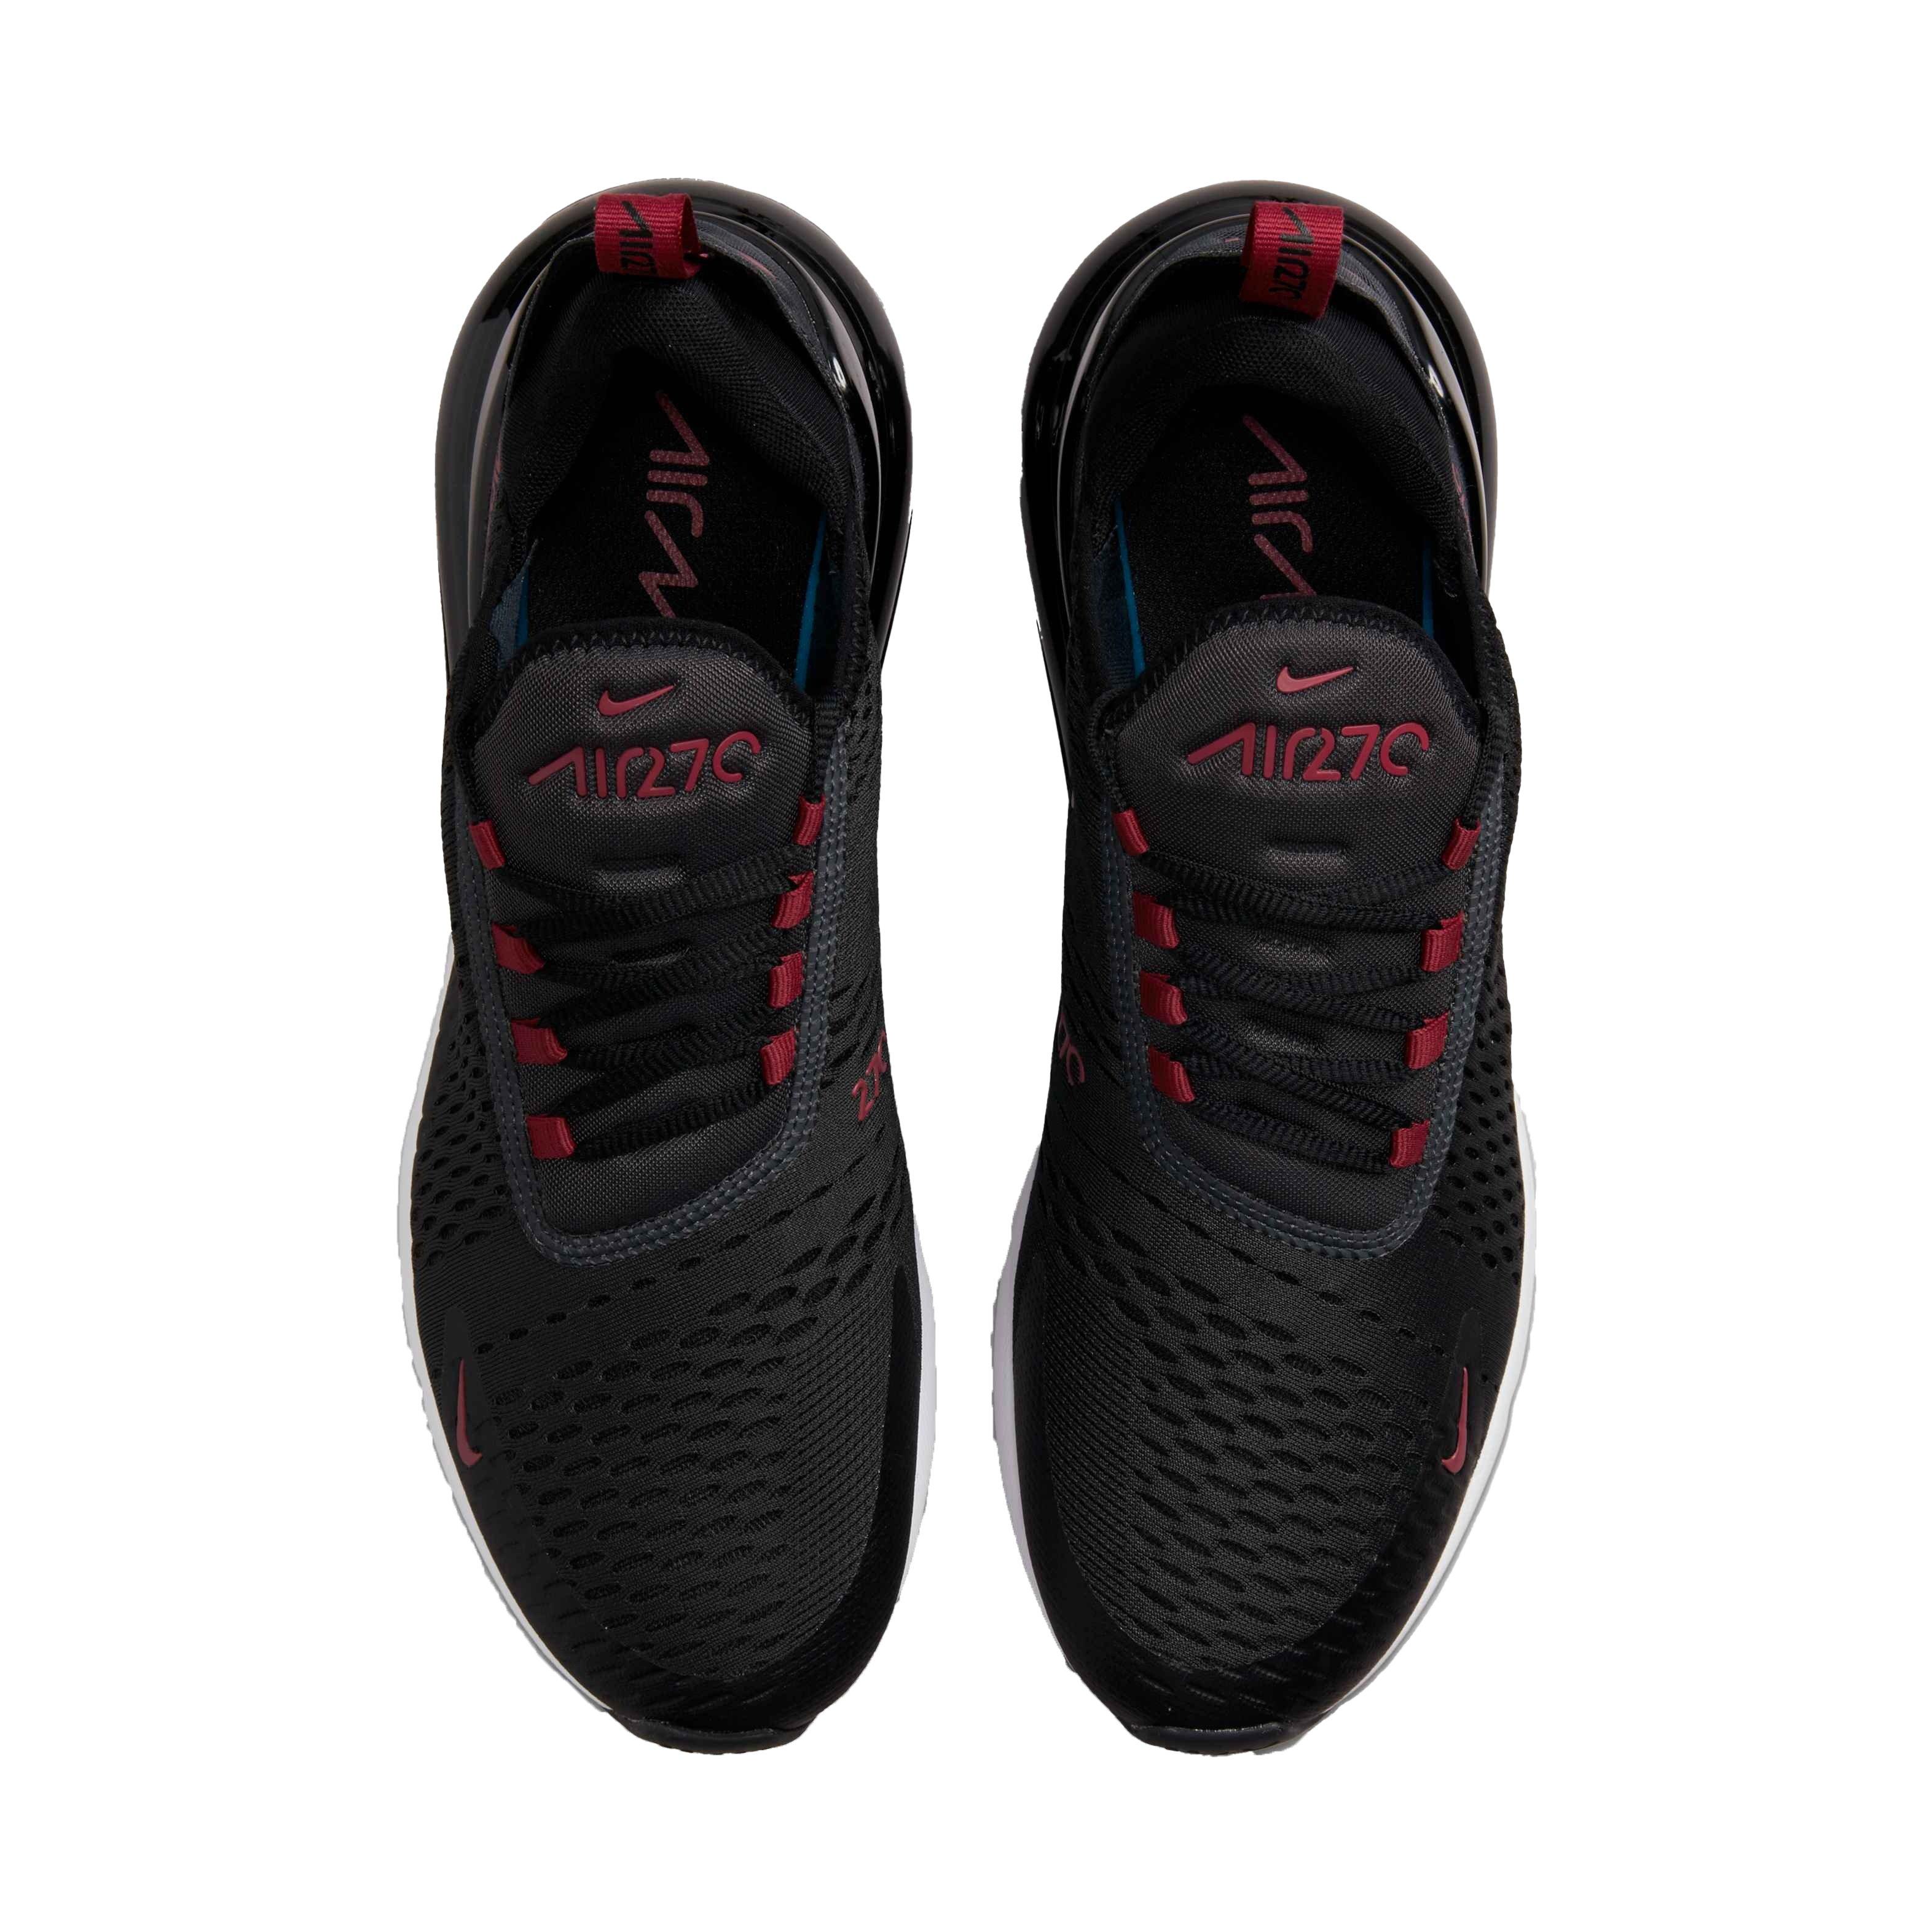 Paquete o empaquetar de ultramar Formular Nike Air Max 270 "Anthracite/Team Red/Black/White" Men's Shoe